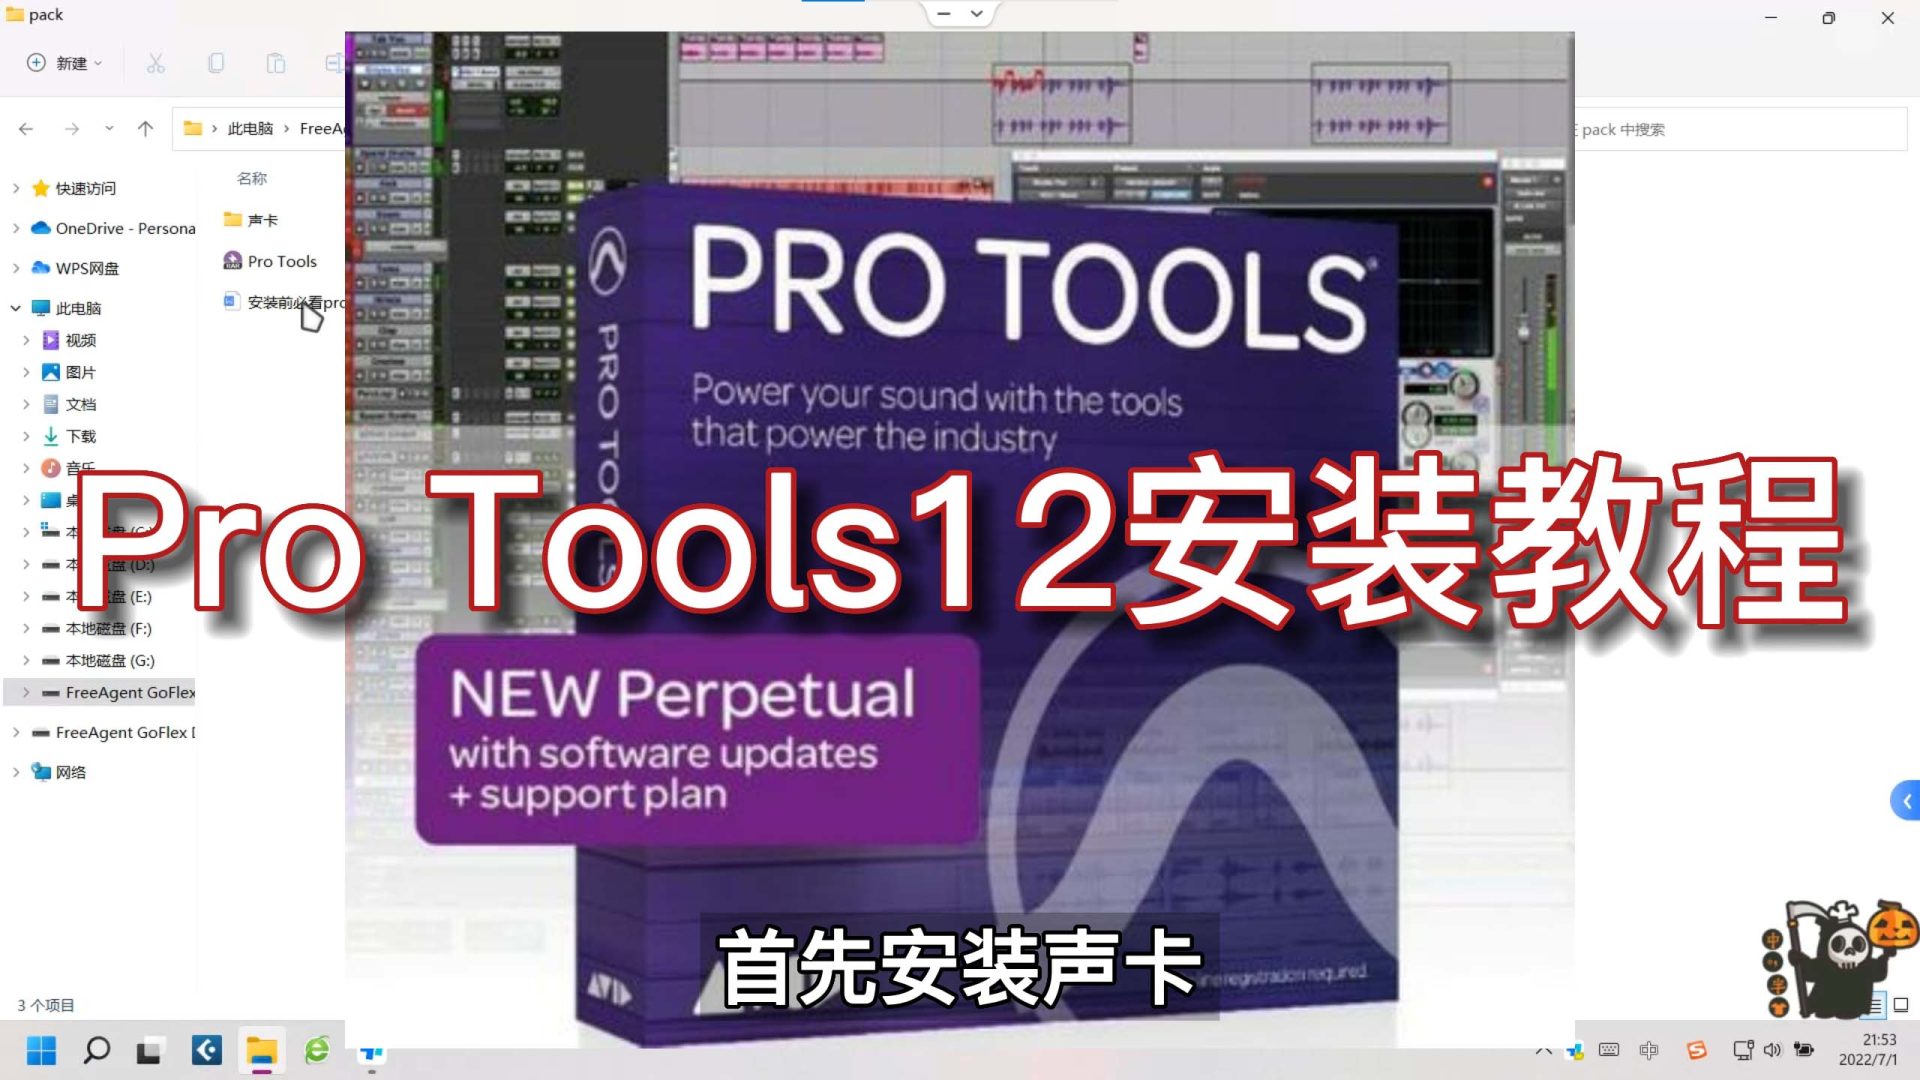 宿主软件【Pro Tools12】ProTools中英文版 – 混音编曲软件 [Windows版]